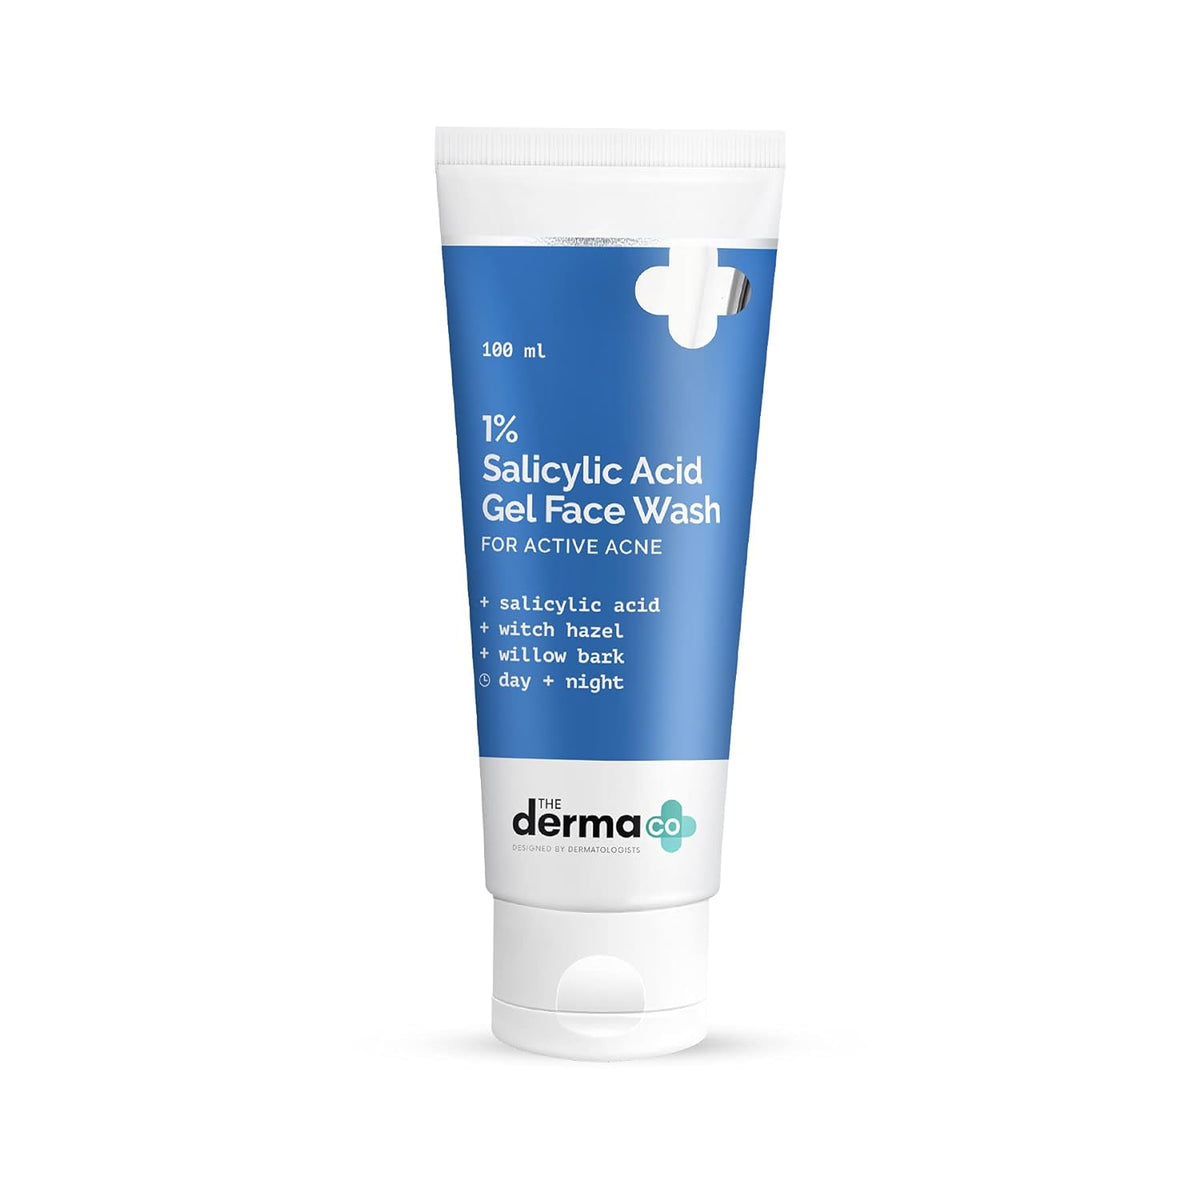 The Darma Co 1% Salicylic Acid Gel Face Wash with Salicylic Acid & Witch Hazel - 100ml (Pack of 2)